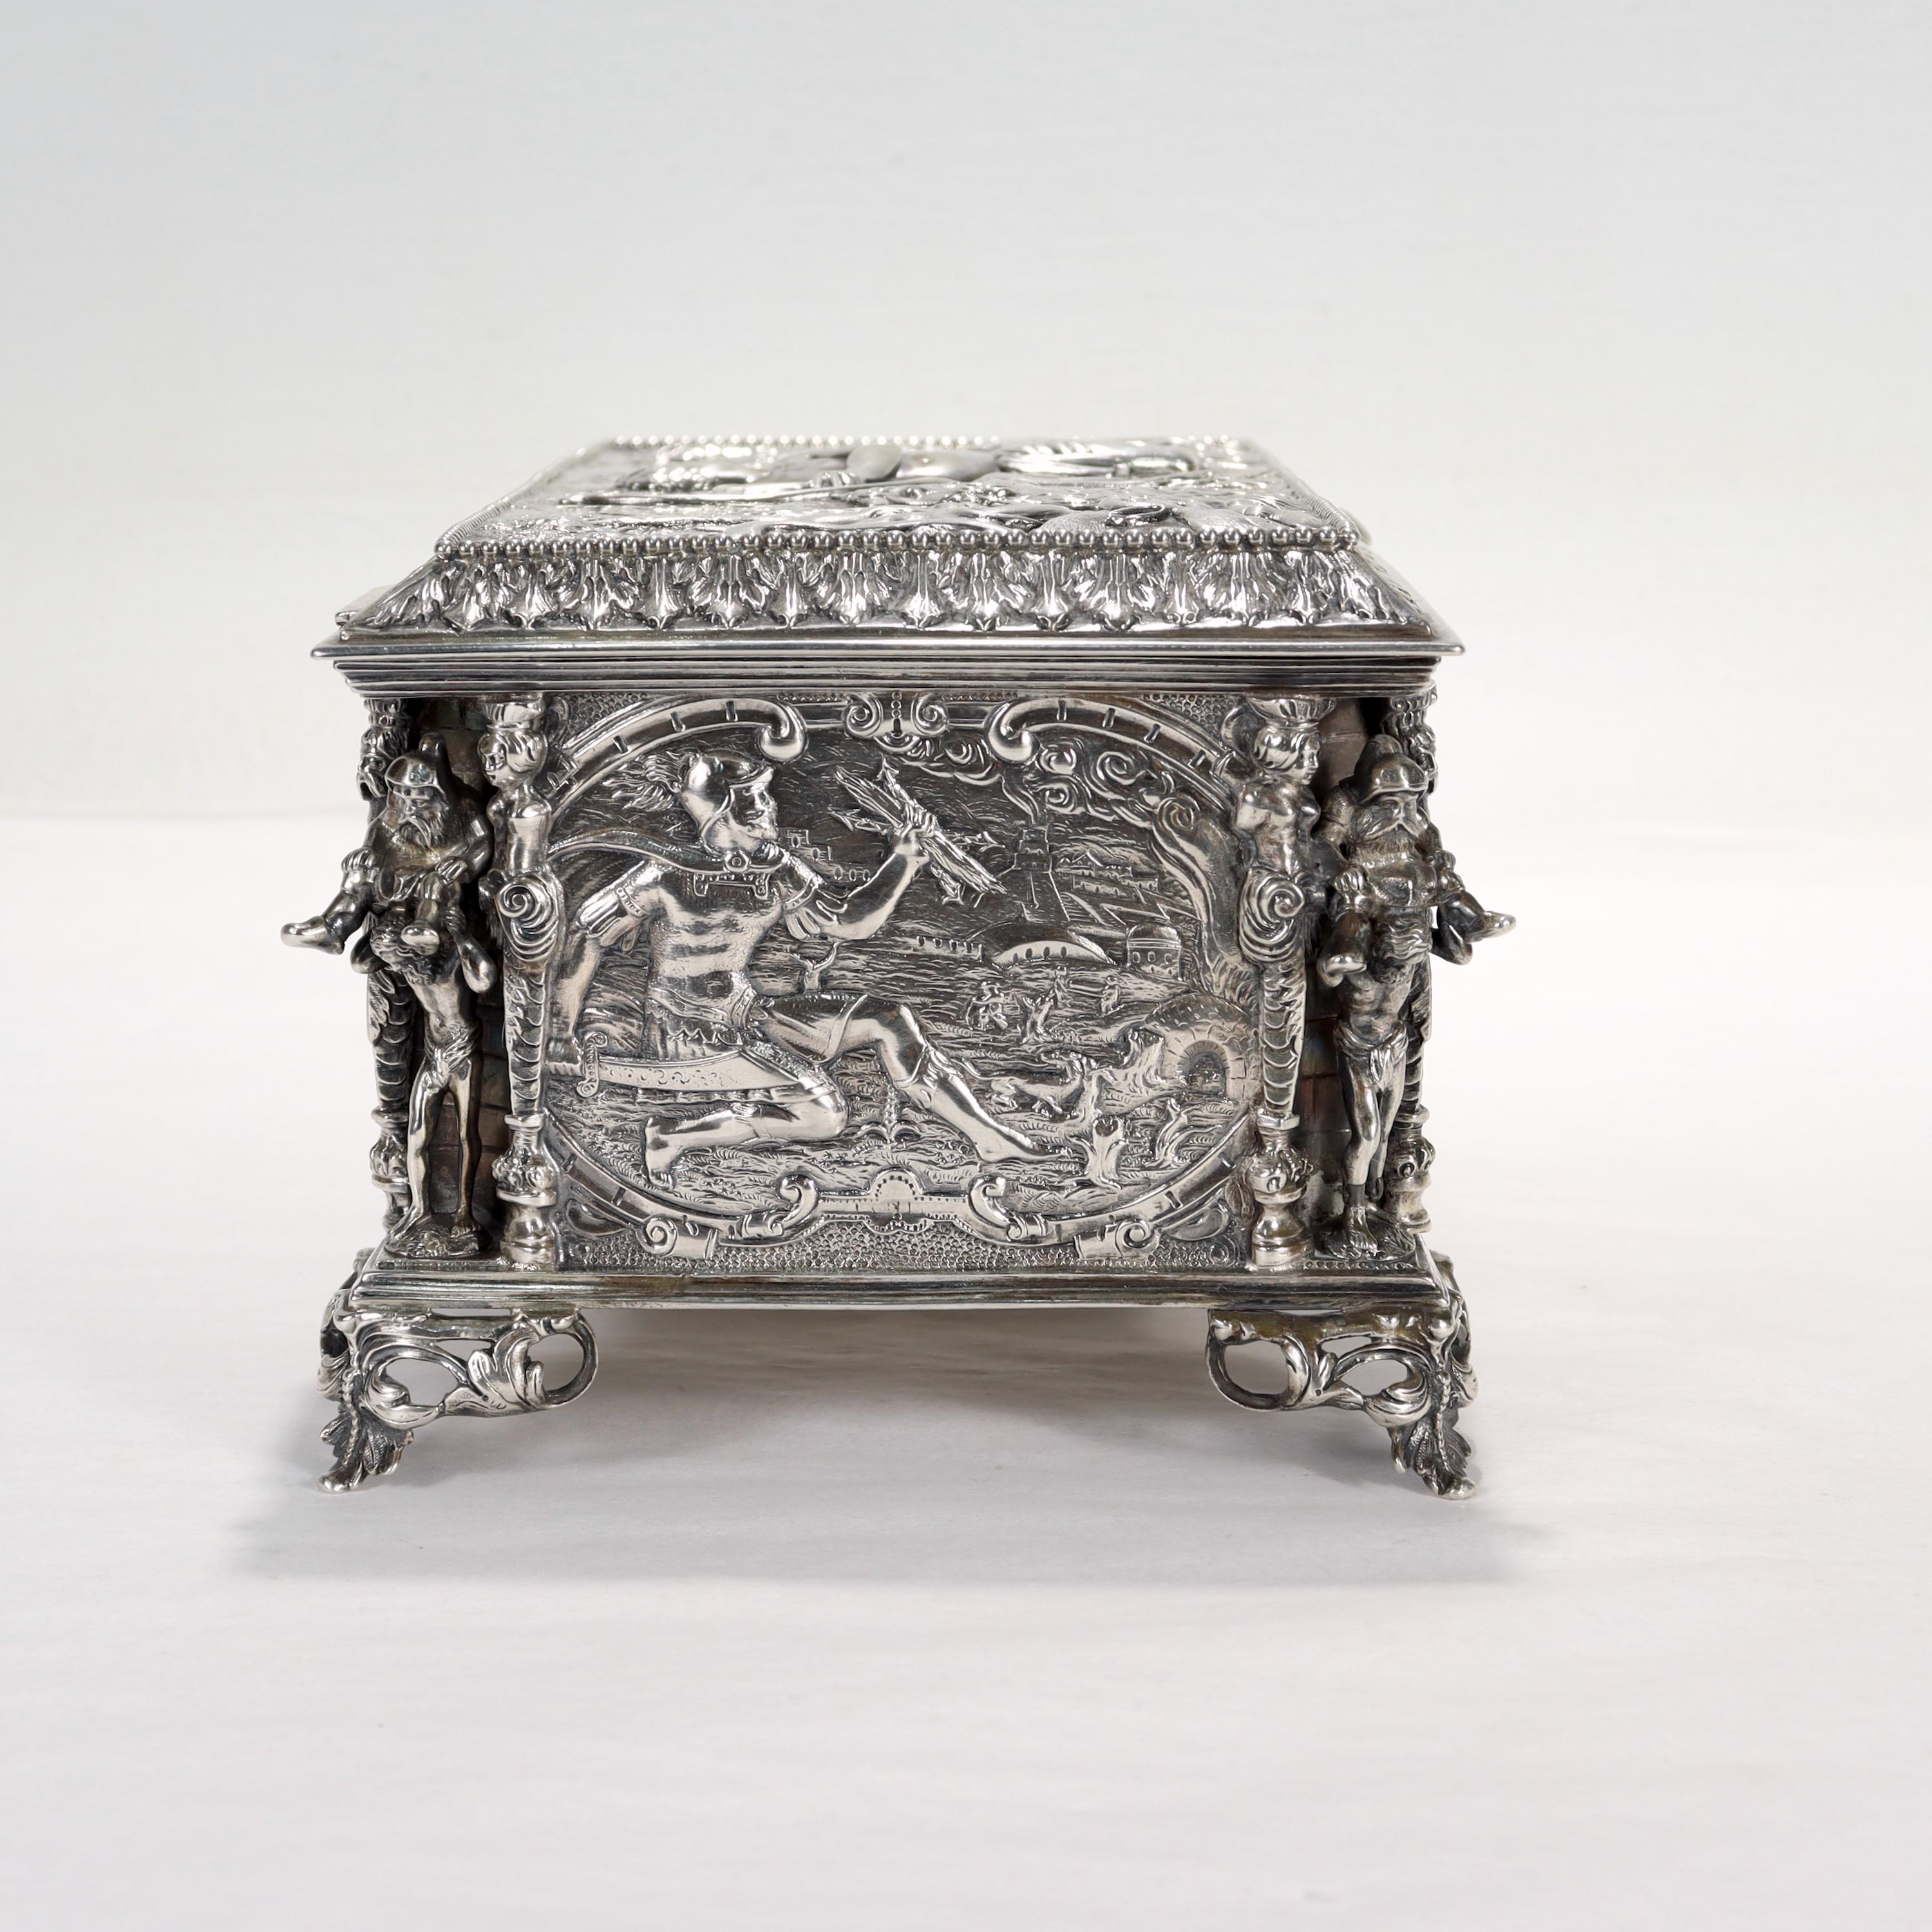 Antique German Figural Renaissance Revival Solid Silver Table Box or Casket For Sale 2